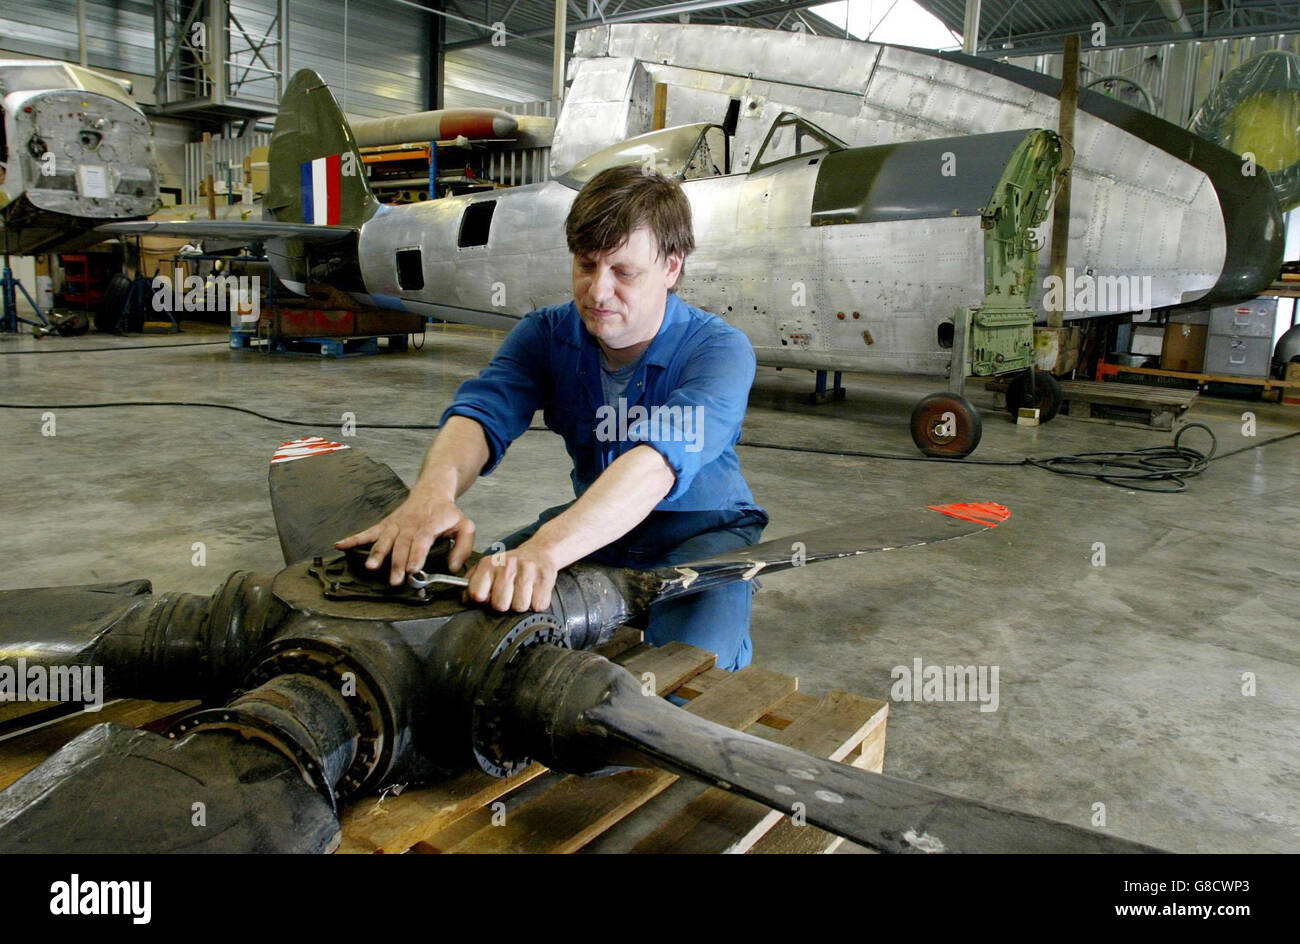 Mike Terry, Restaurierungsingenieur bei der Aircraft Restoration Company, bereitet eine MK vor. 22 Spitfire für eine Ausstellung im Science Museum in London. Stockfoto